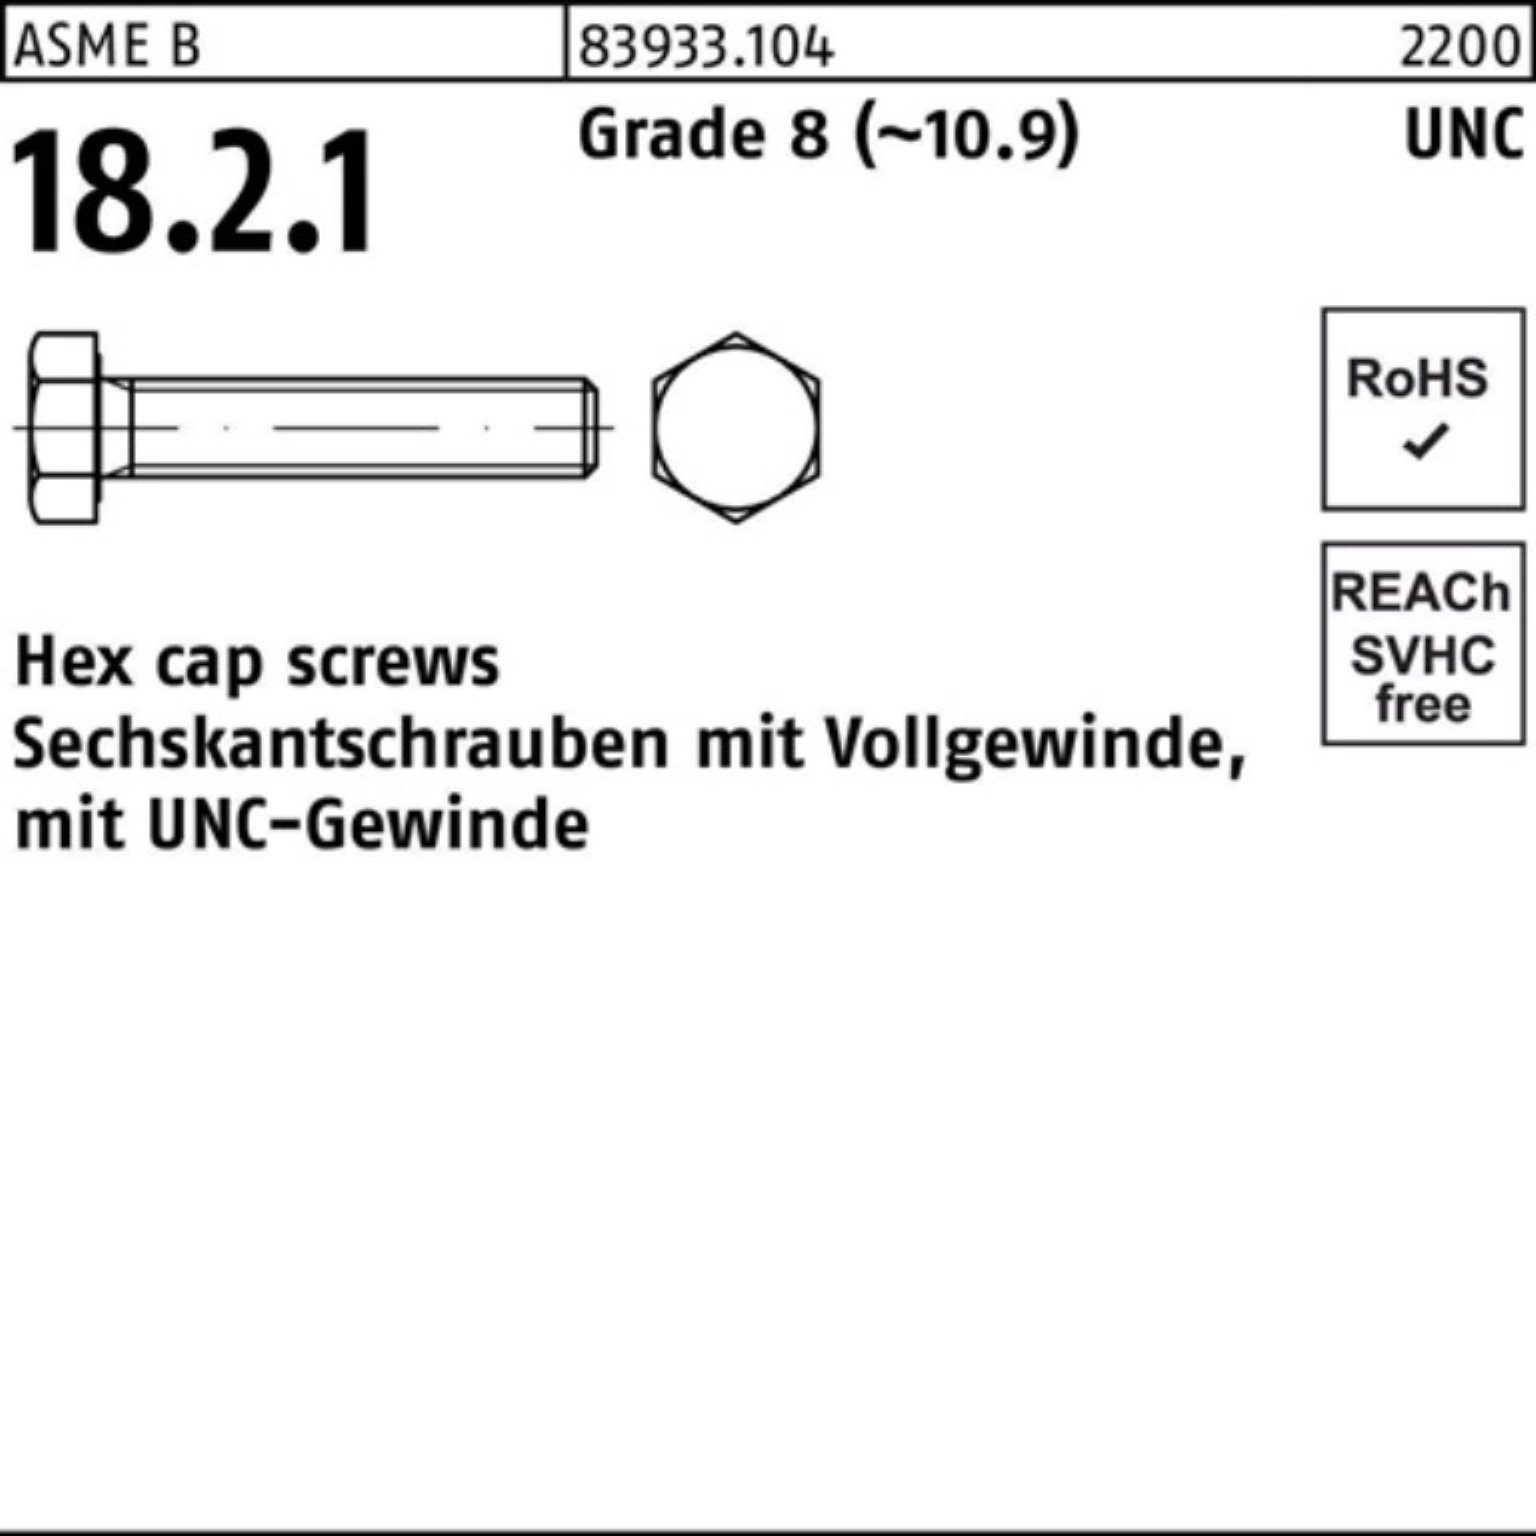 Reyher Sechskantschraube 100er Pack Sechskantschraube R 83933 UNC-Gewinde VG 1/2x 1 Grade 8 (1